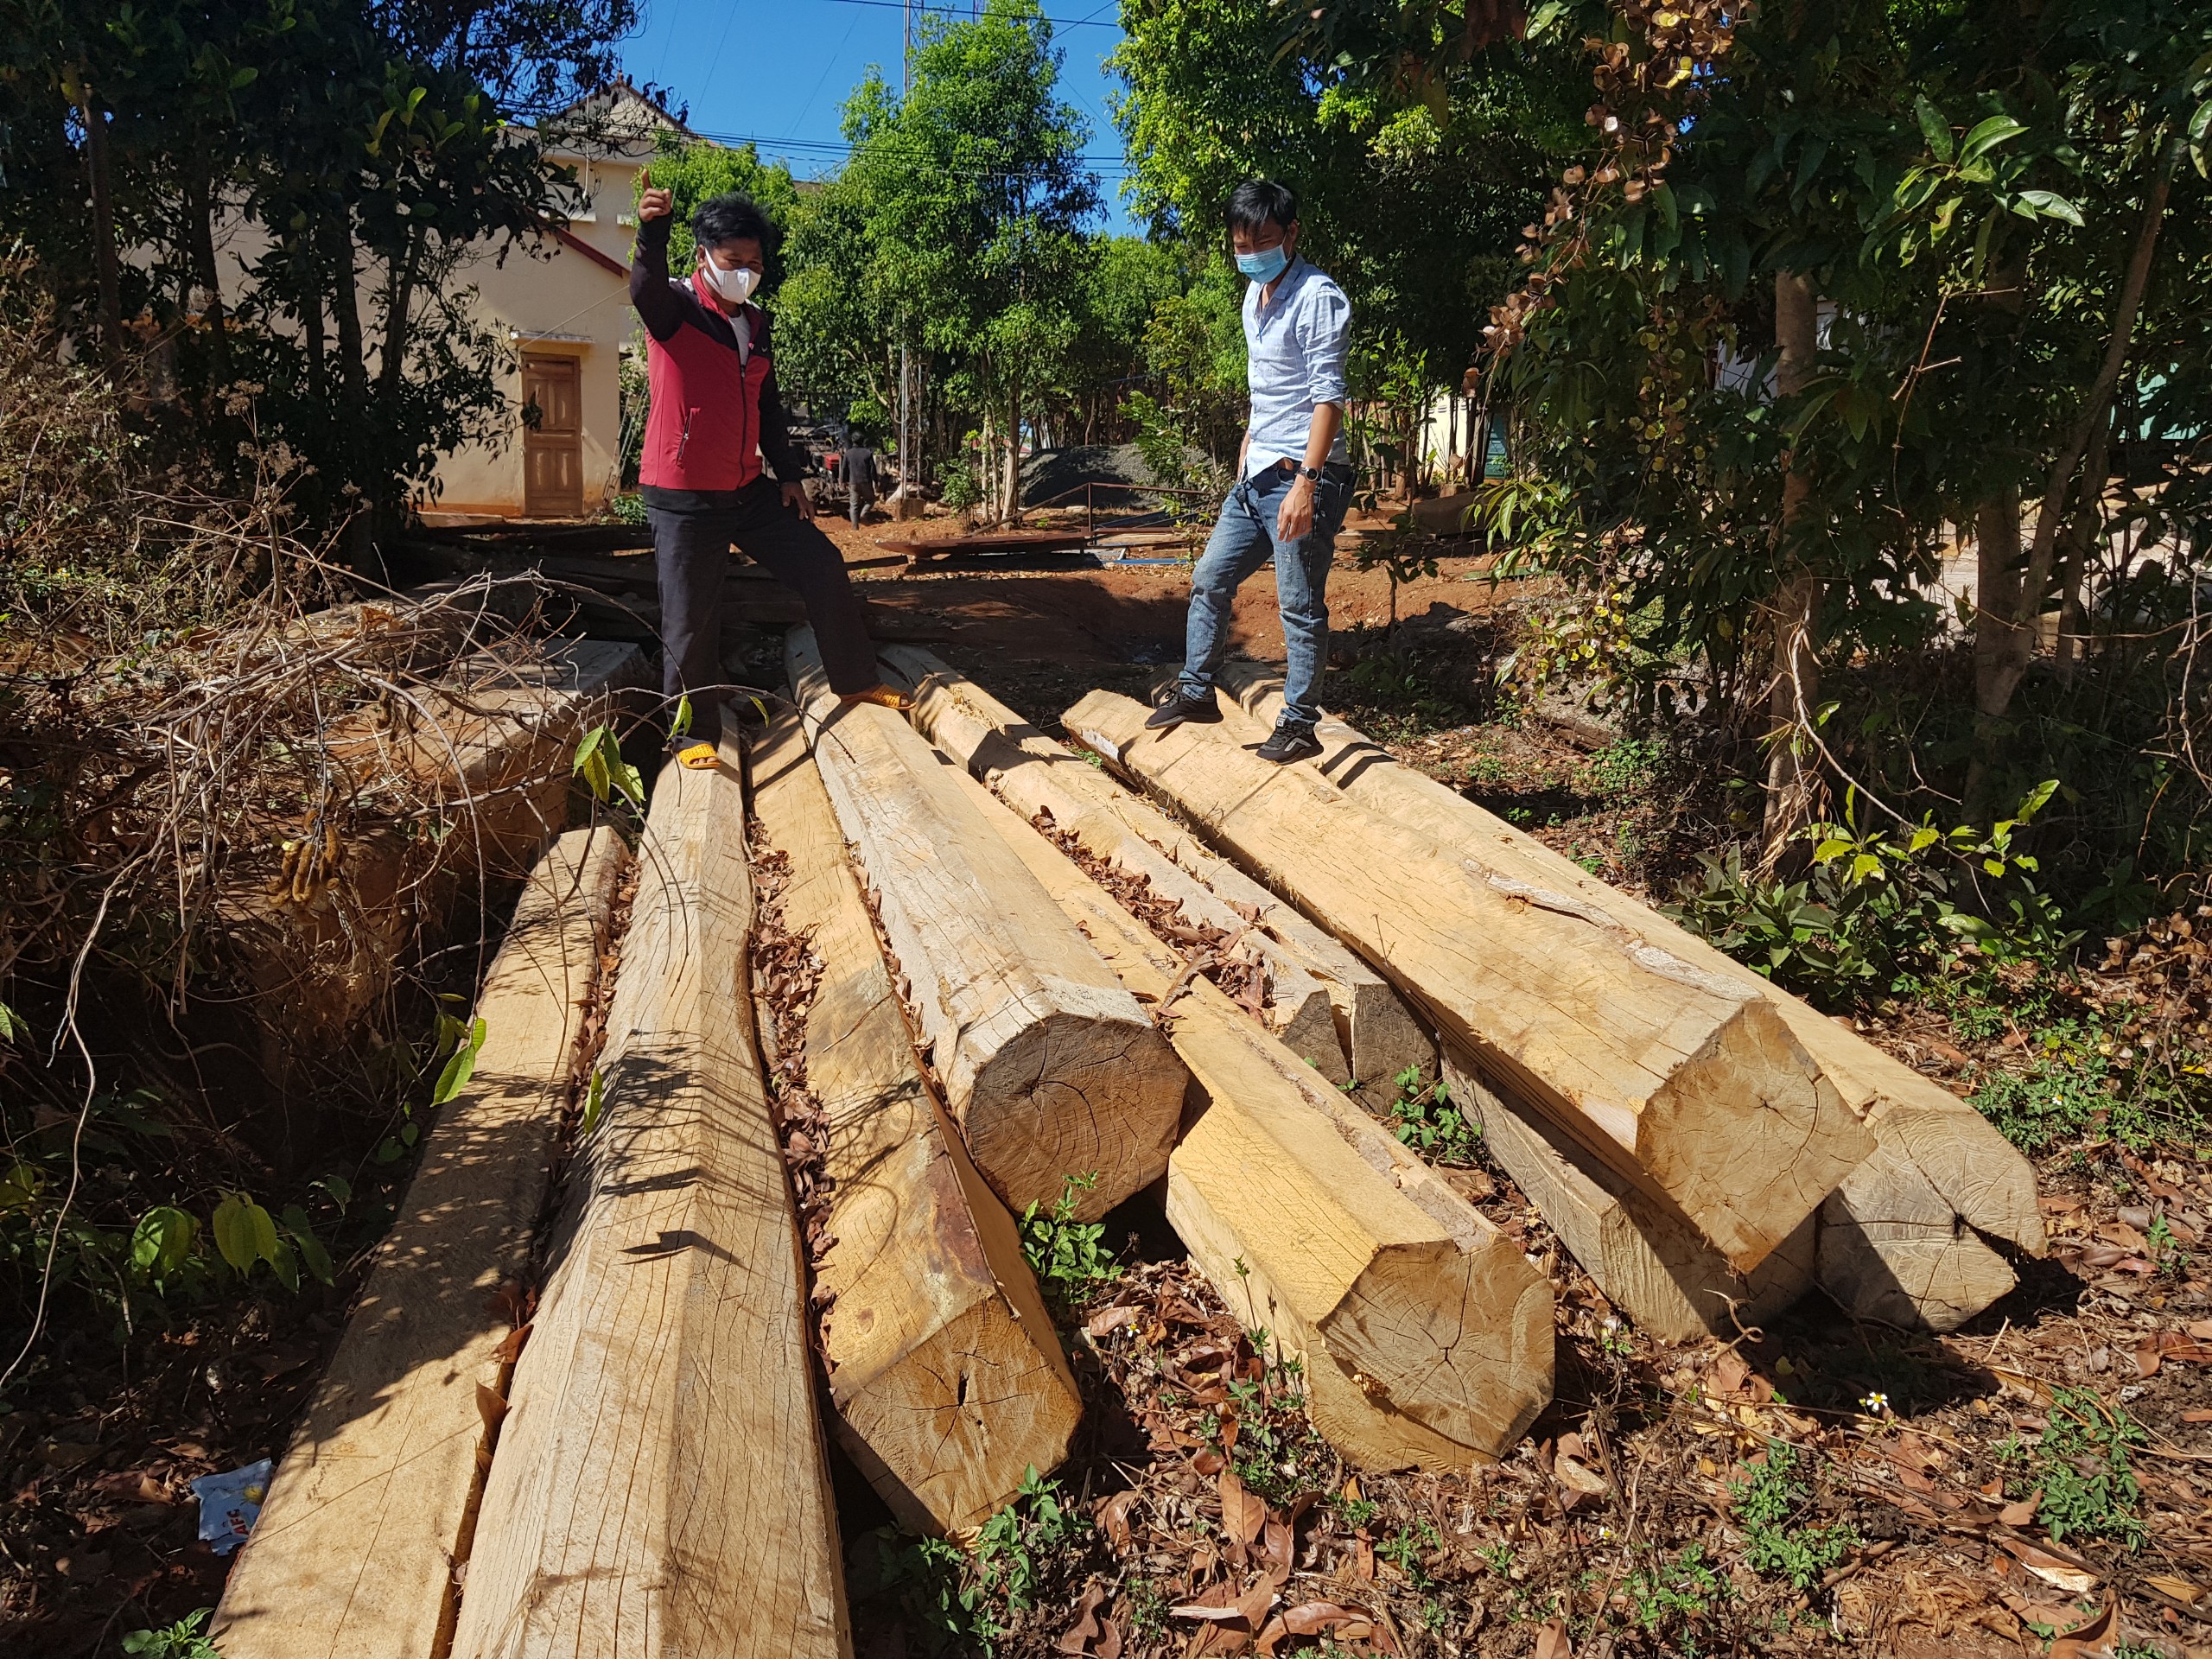 Tổ quản lý, bảo vệ rừng làng Tar kịp thời phát hiện, ngăn chặn vụ khai thác rừng trái phép ở lâm phần quản lý. Ảnh: Thiên Di